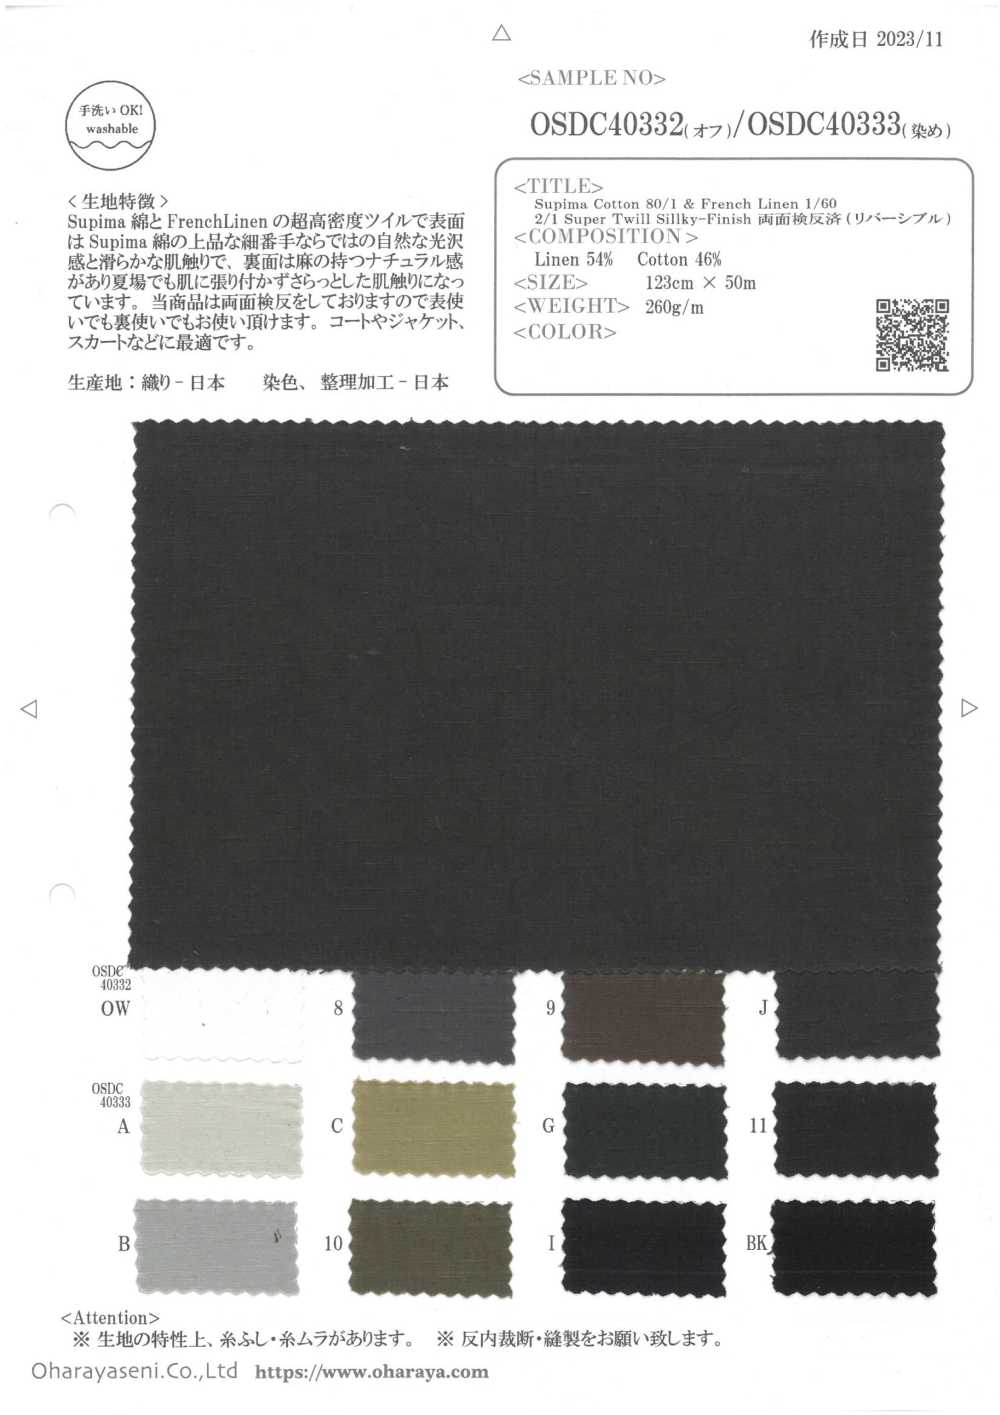 OSDC40333 蘇比馬棉 80/1 和法國亞麻 1/60 2/1 超級斜紋布 絲滑雙面檢驗（正反一樣）（染色）[面料] 小原屋繊維